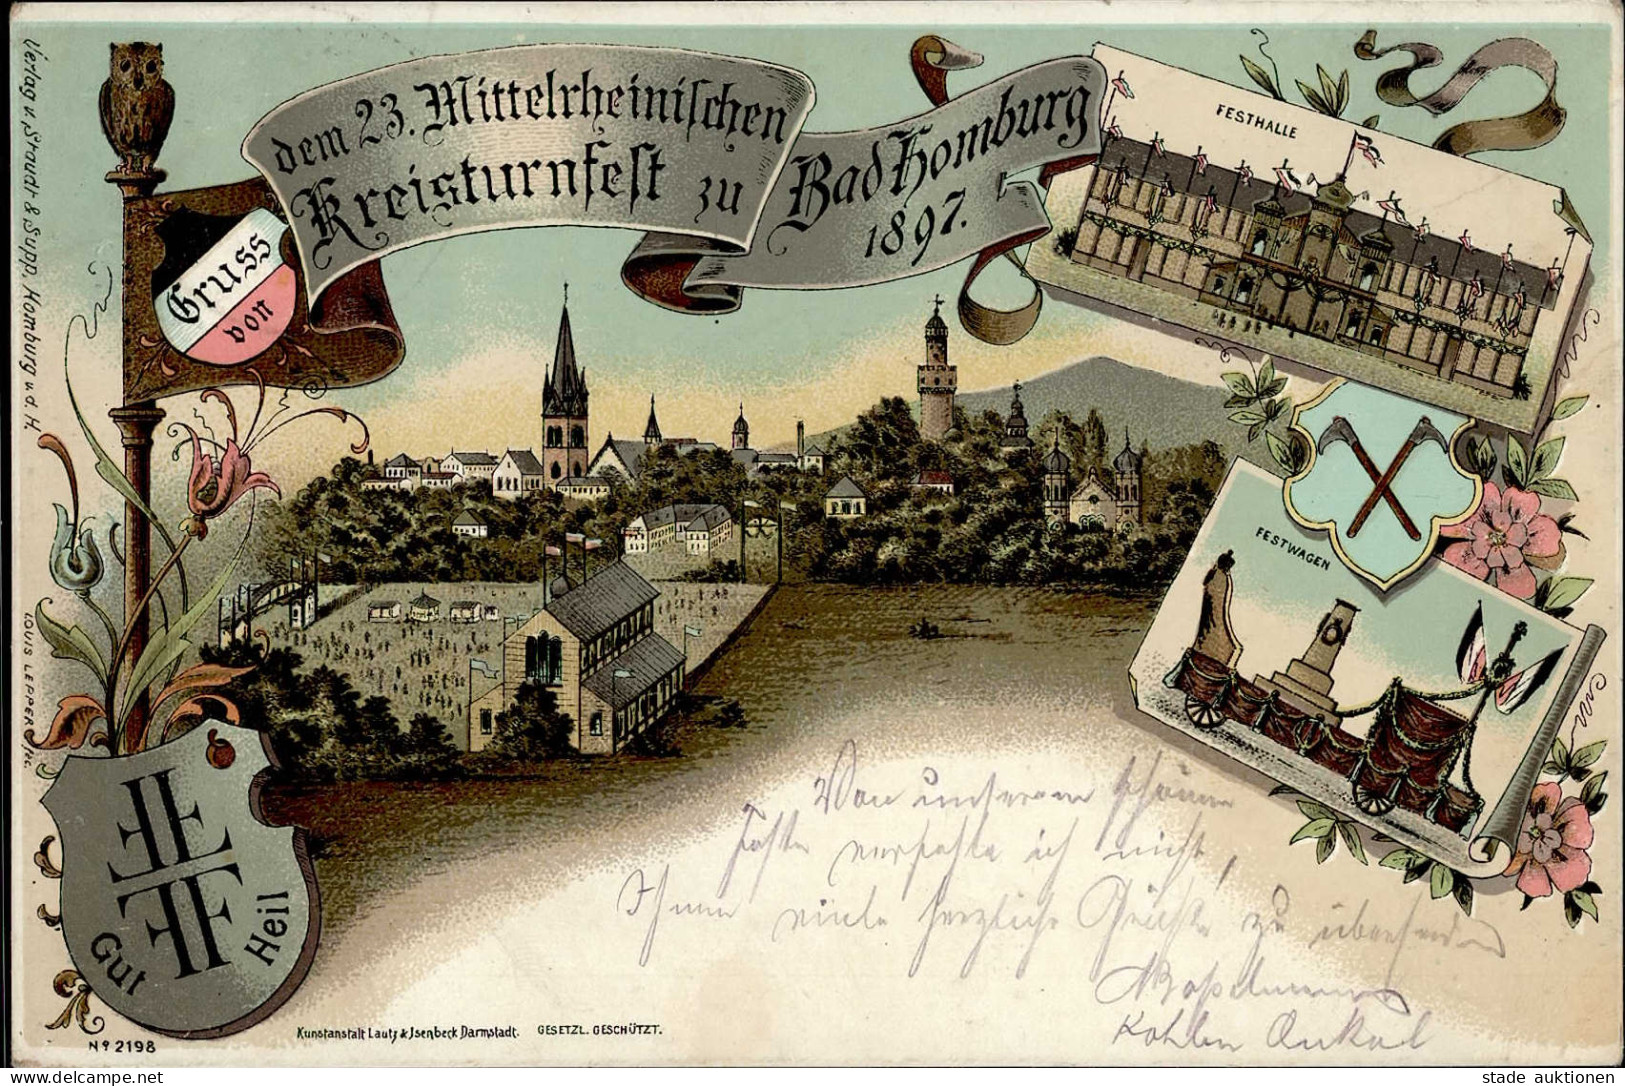 BAD HOMBURG - Gruss Vom 23.Mittlerh. KREISTURNFEST 1897 Mit S-o I-II Montagnes - Expositions